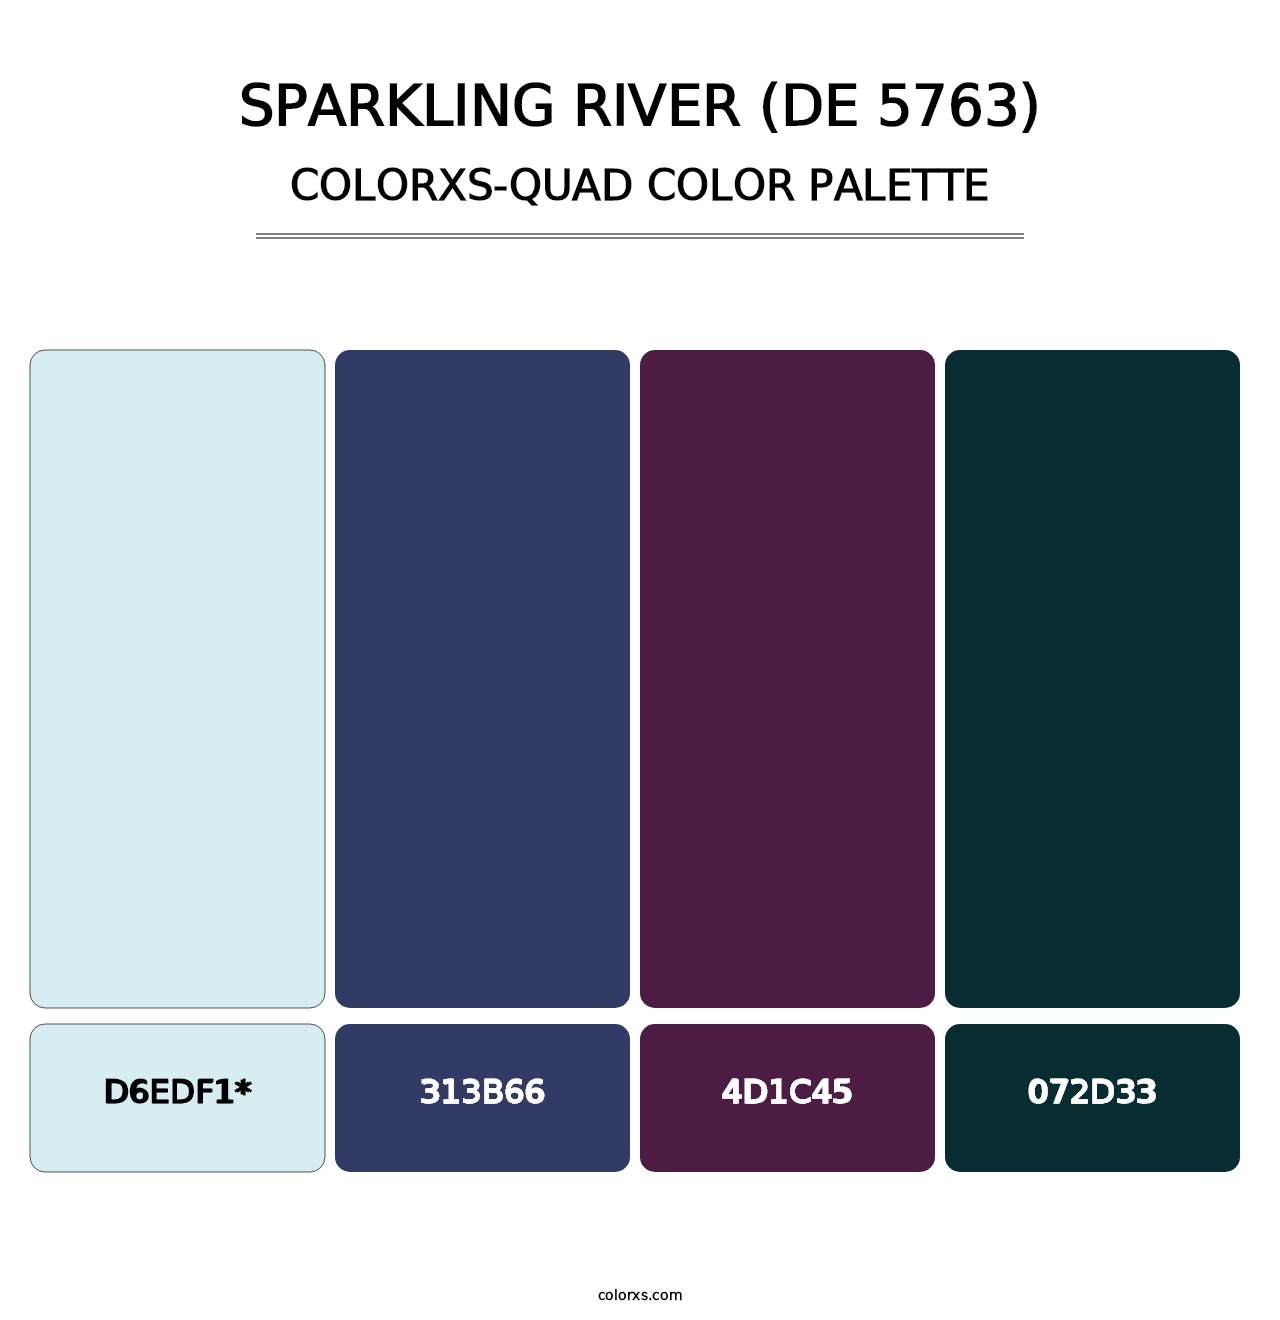 Sparkling River (DE 5763) - Colorxs Quad Palette